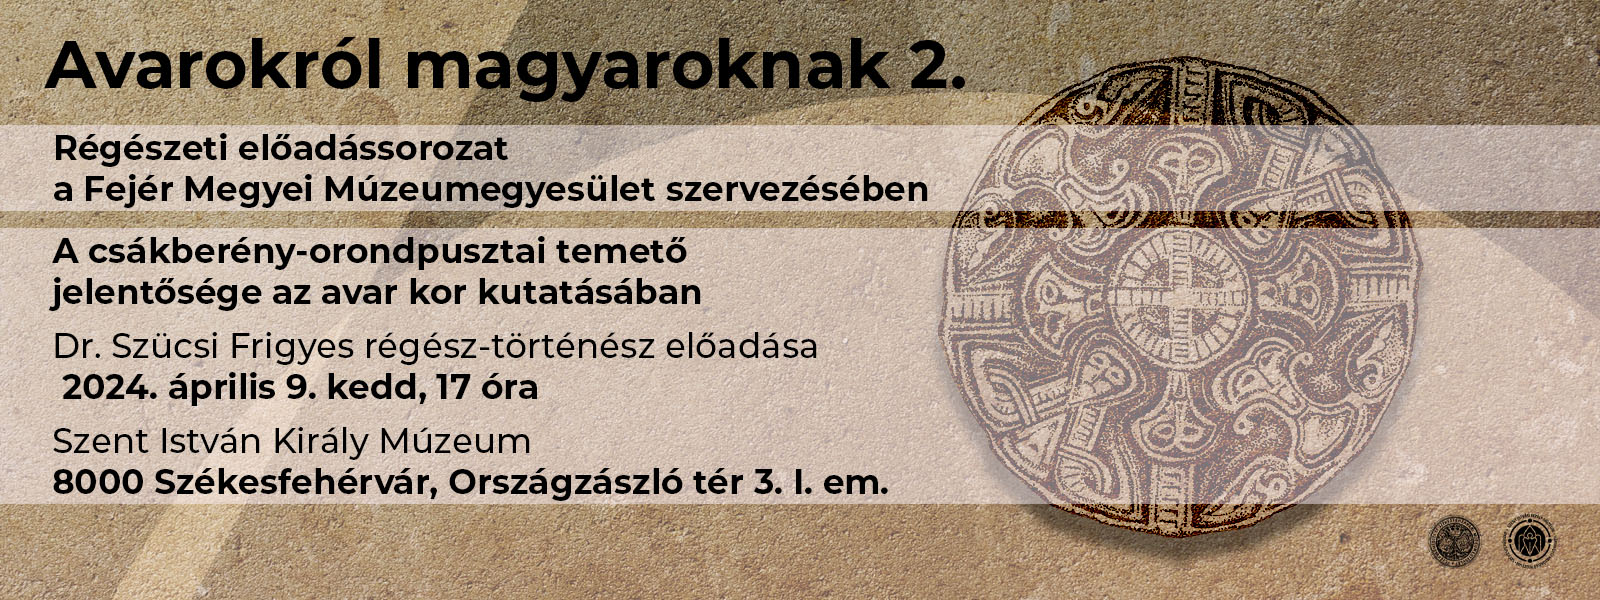 Avarokról magyaroknak – előadássorozat 2.: A csákberény-orondpusztai temető jelentősége az avar kor kutatásában